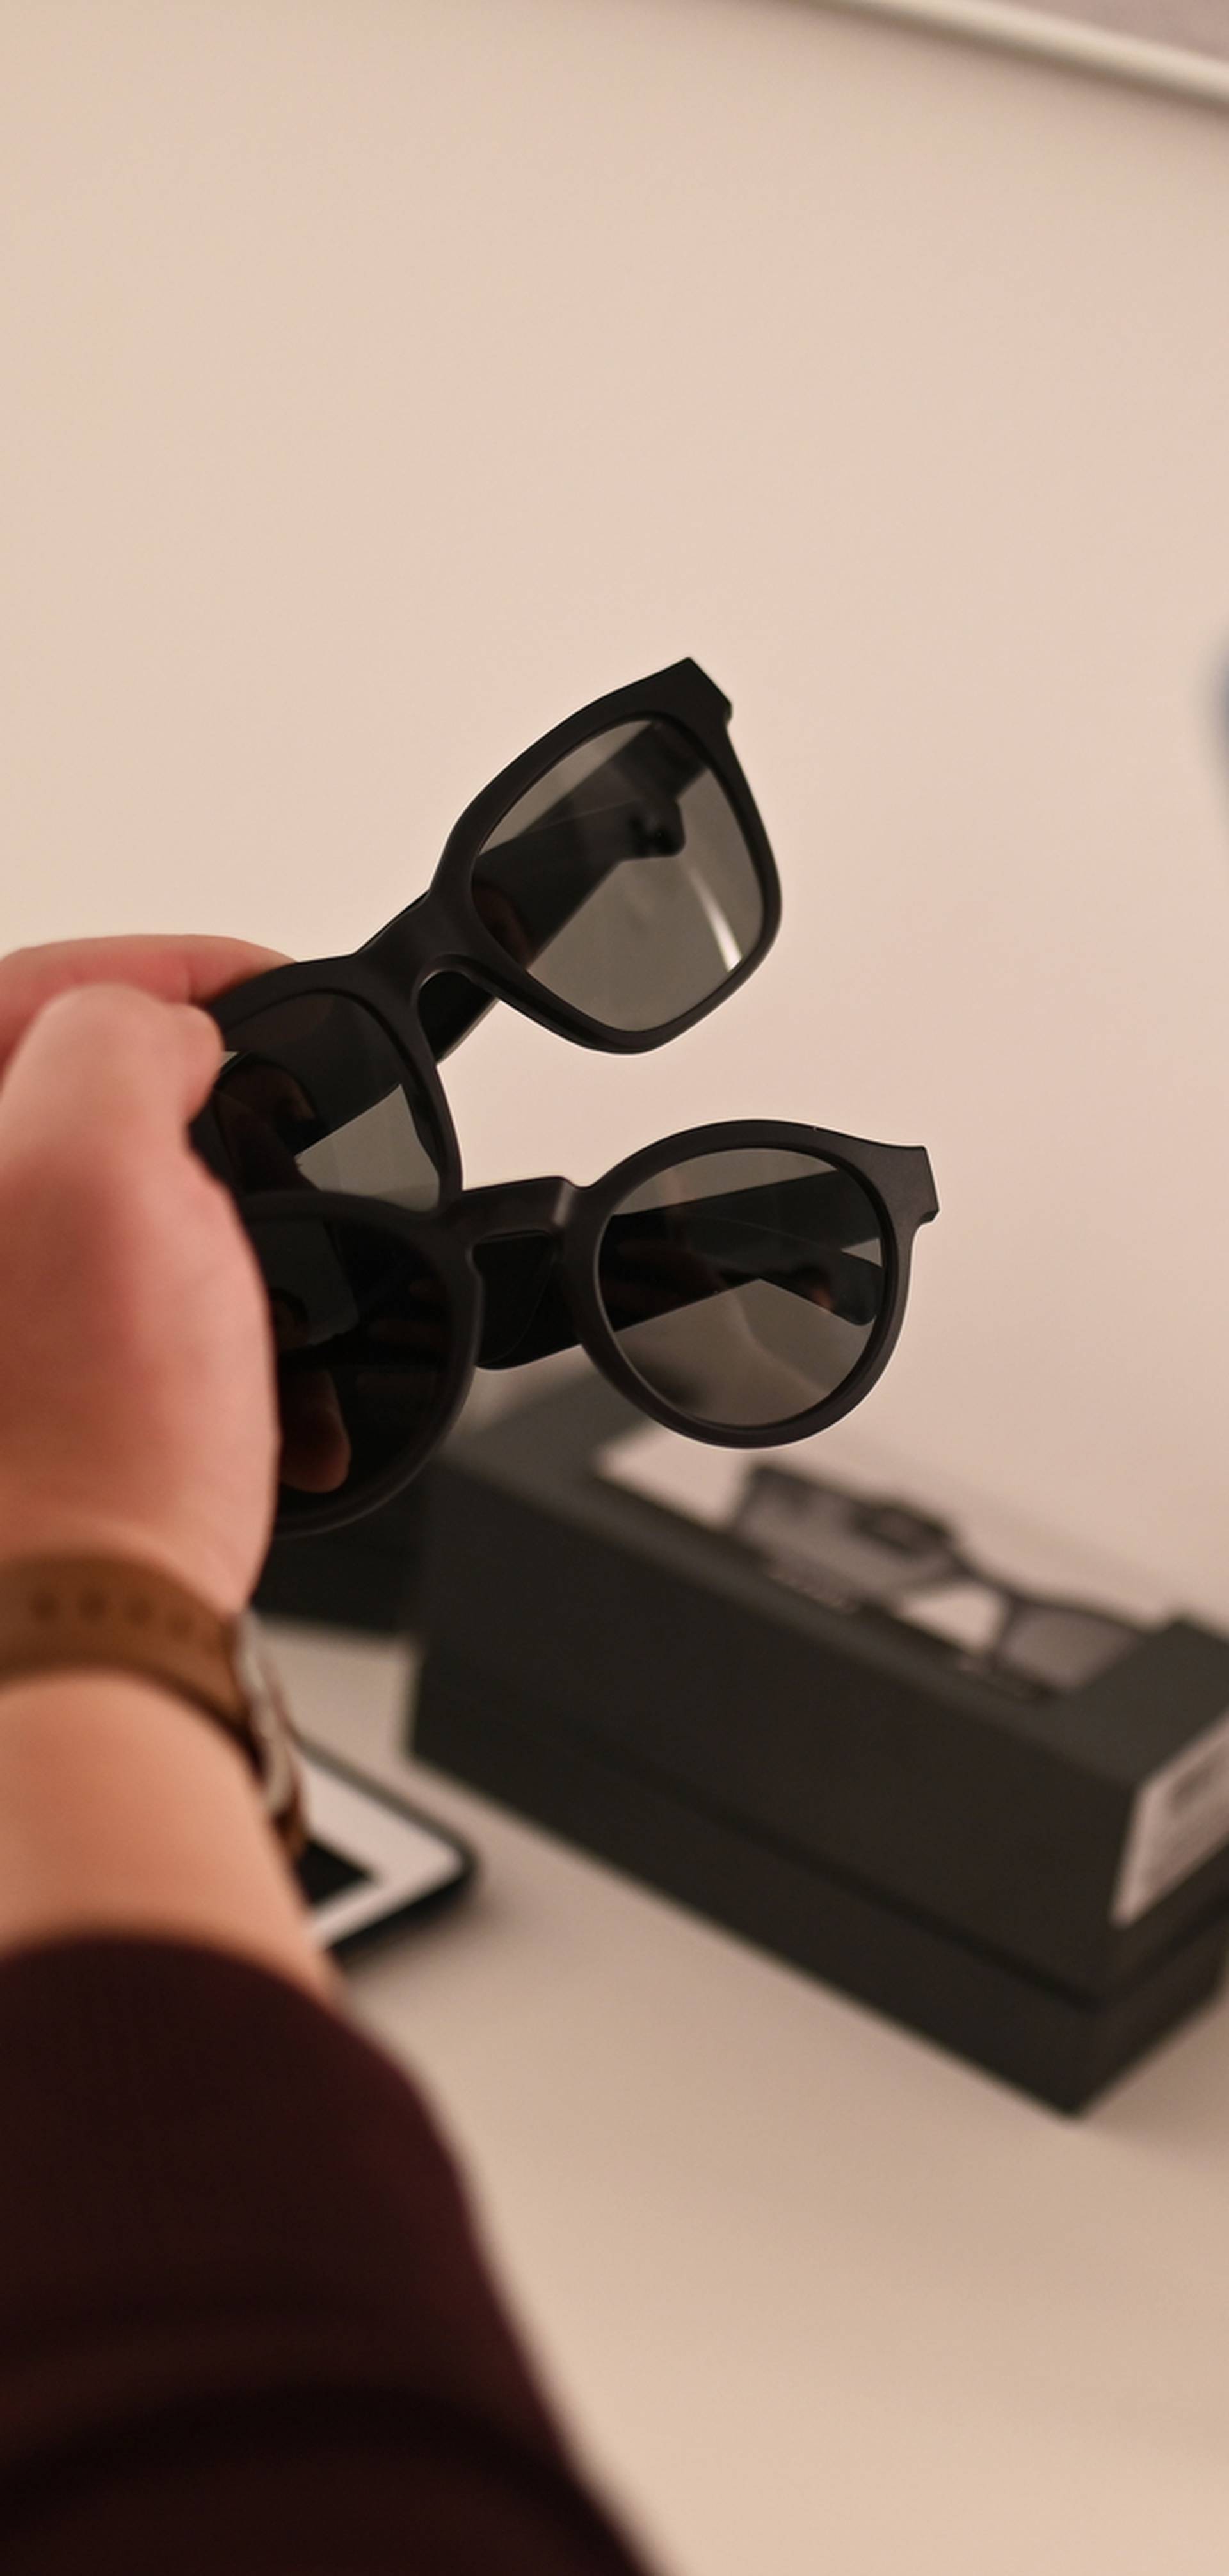 Zagreb dobio Bose premium shop, predstavili audio naočale